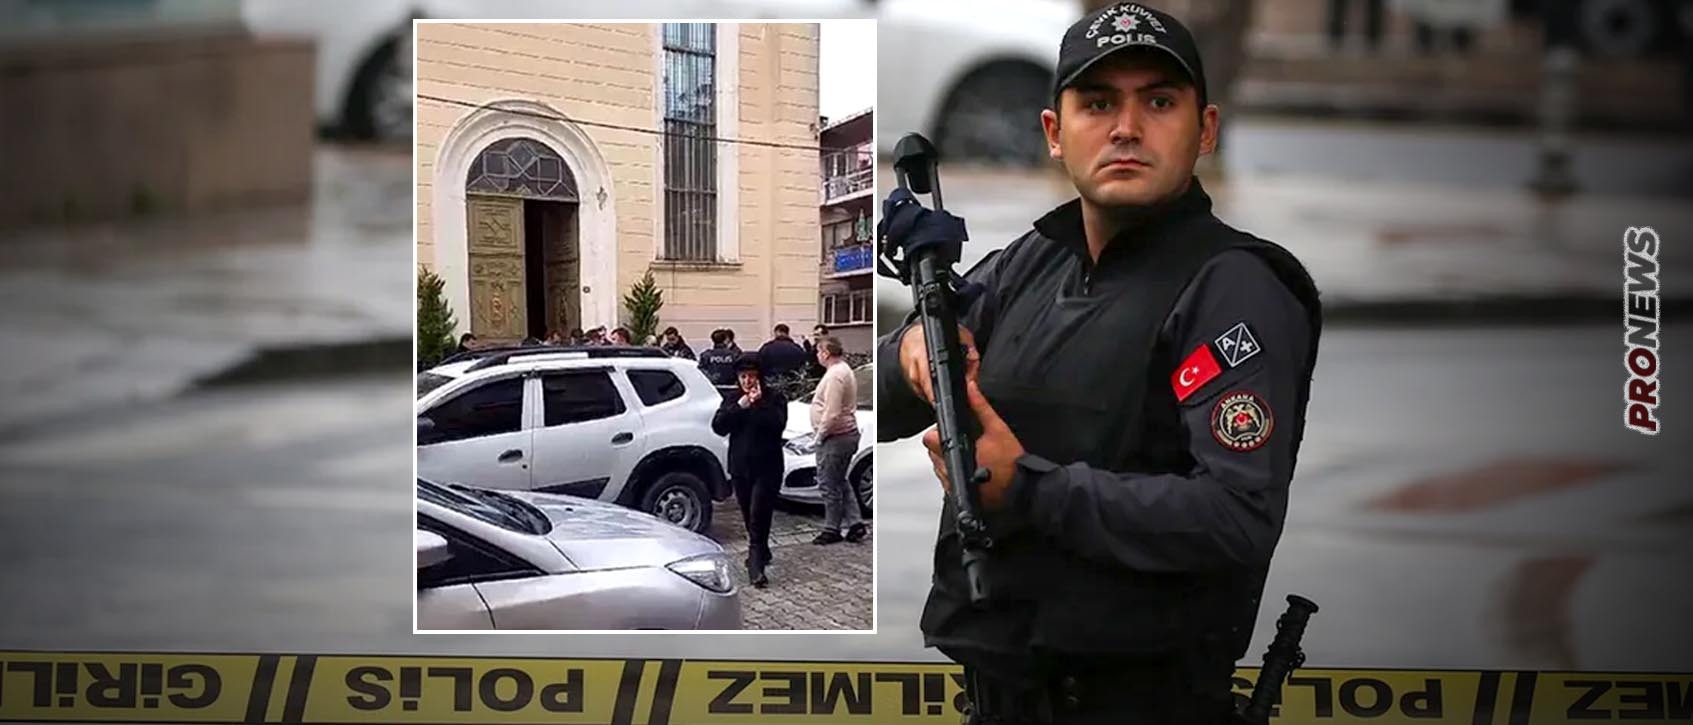 Πυροβολισμοί από ισλαμιστές ένοπλους μασκοφόρους μέσα σε καθολική εκκλησία στην Κωνσταντινούπολη – Ένας νεκρός (βίντεο)